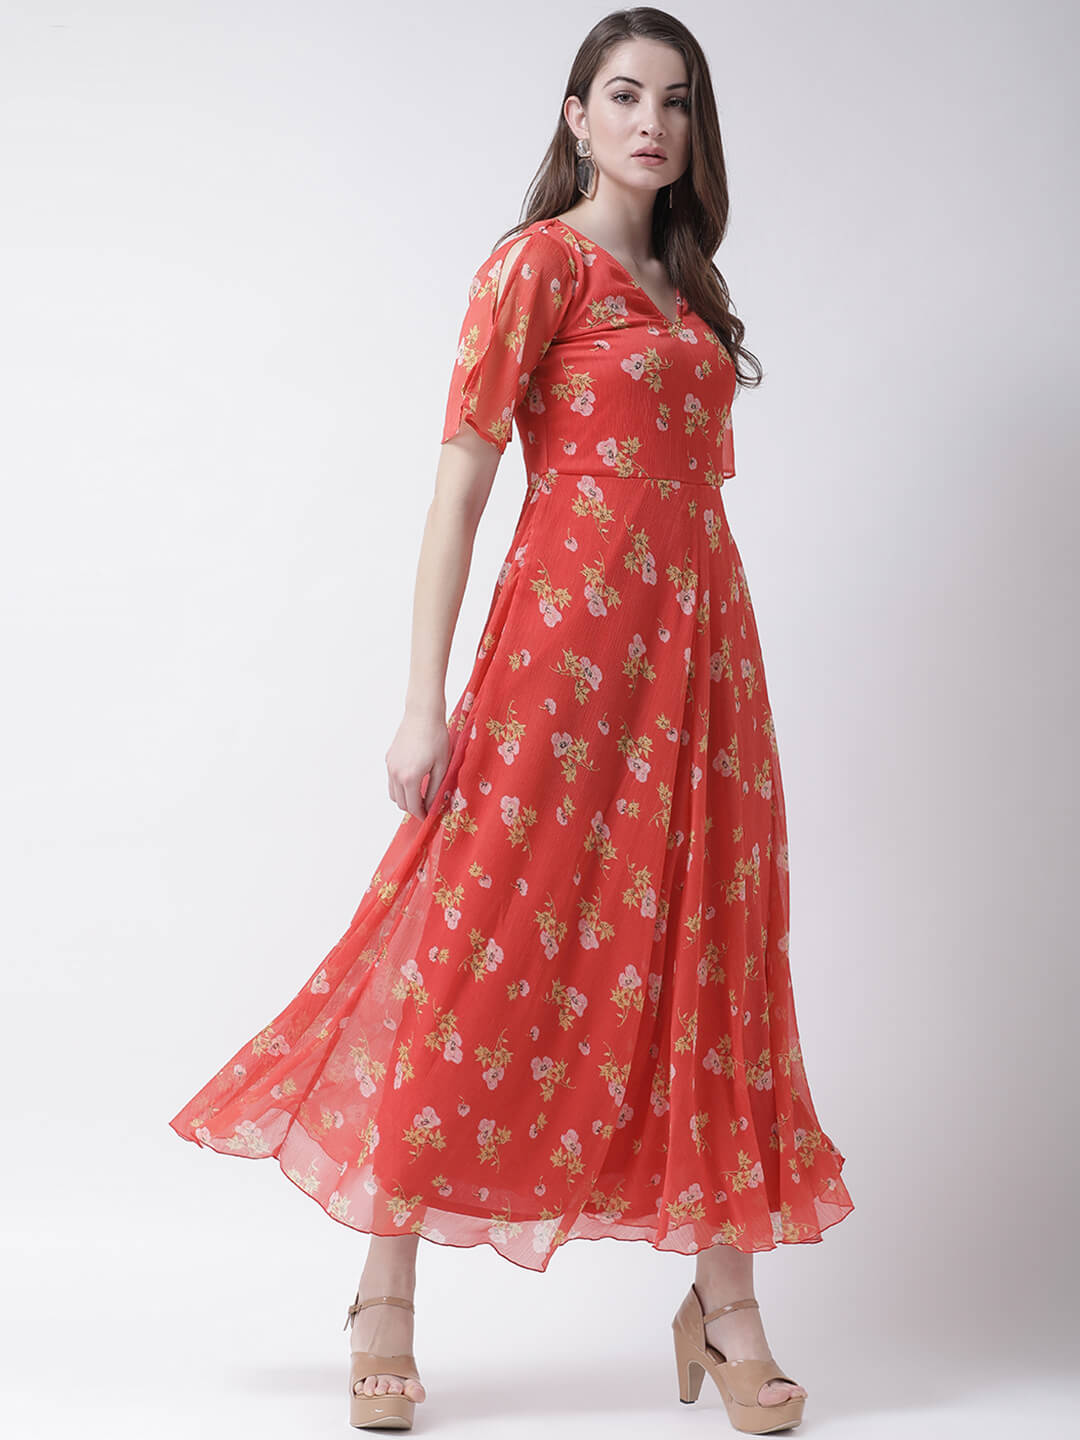 Stylish Printed Maxi Dress